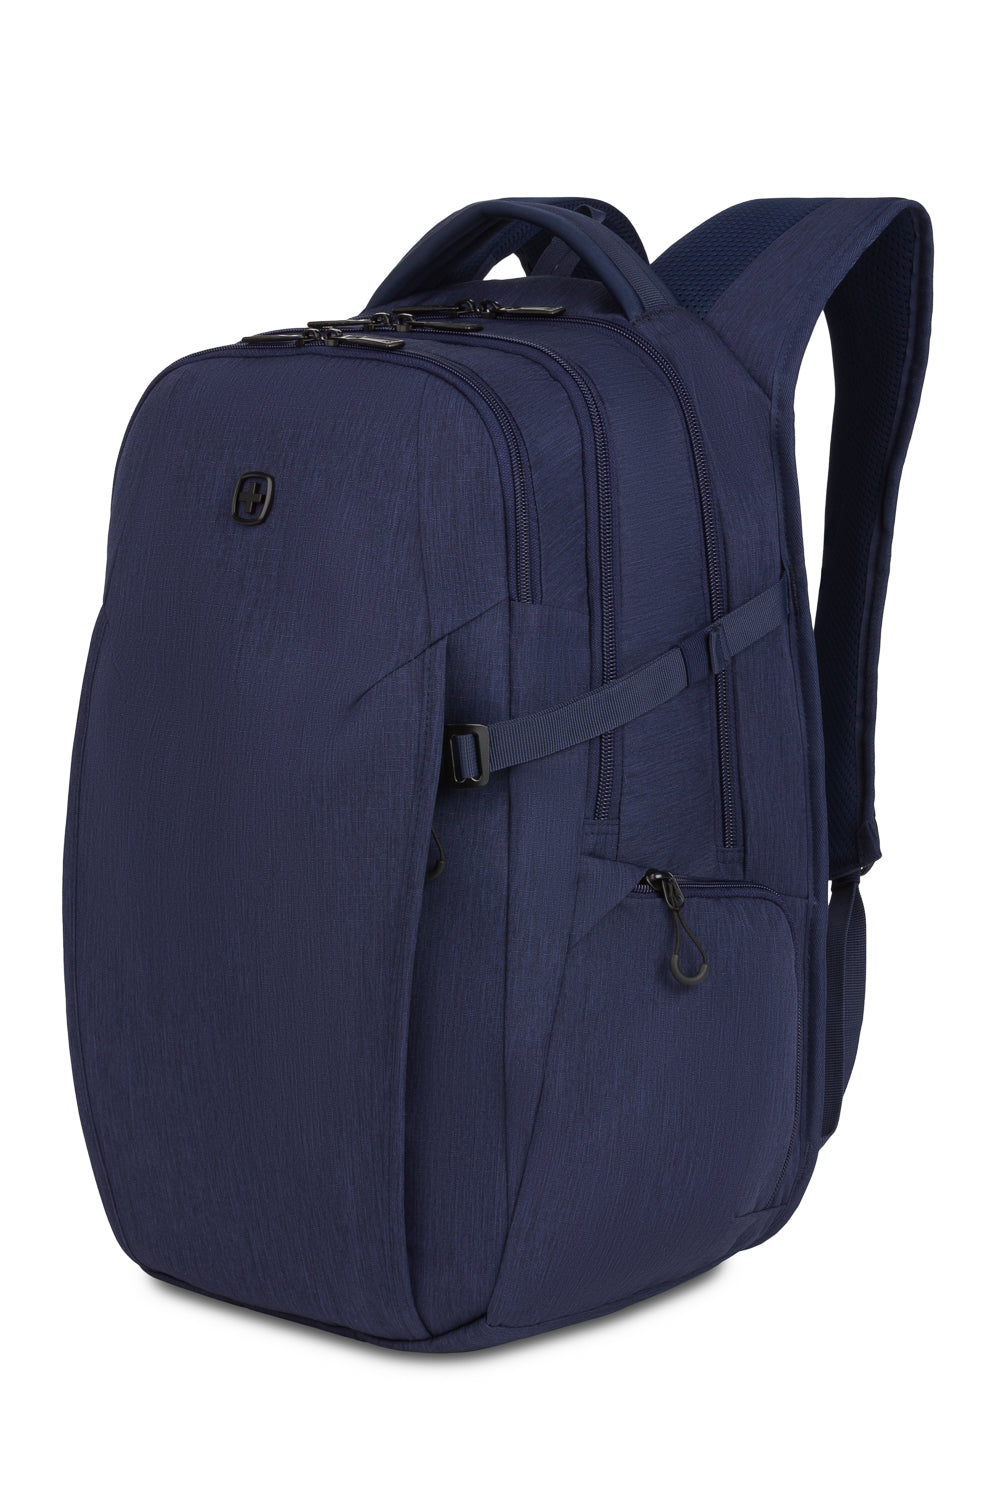 SwissGear 8182 16" Laptop Backpack